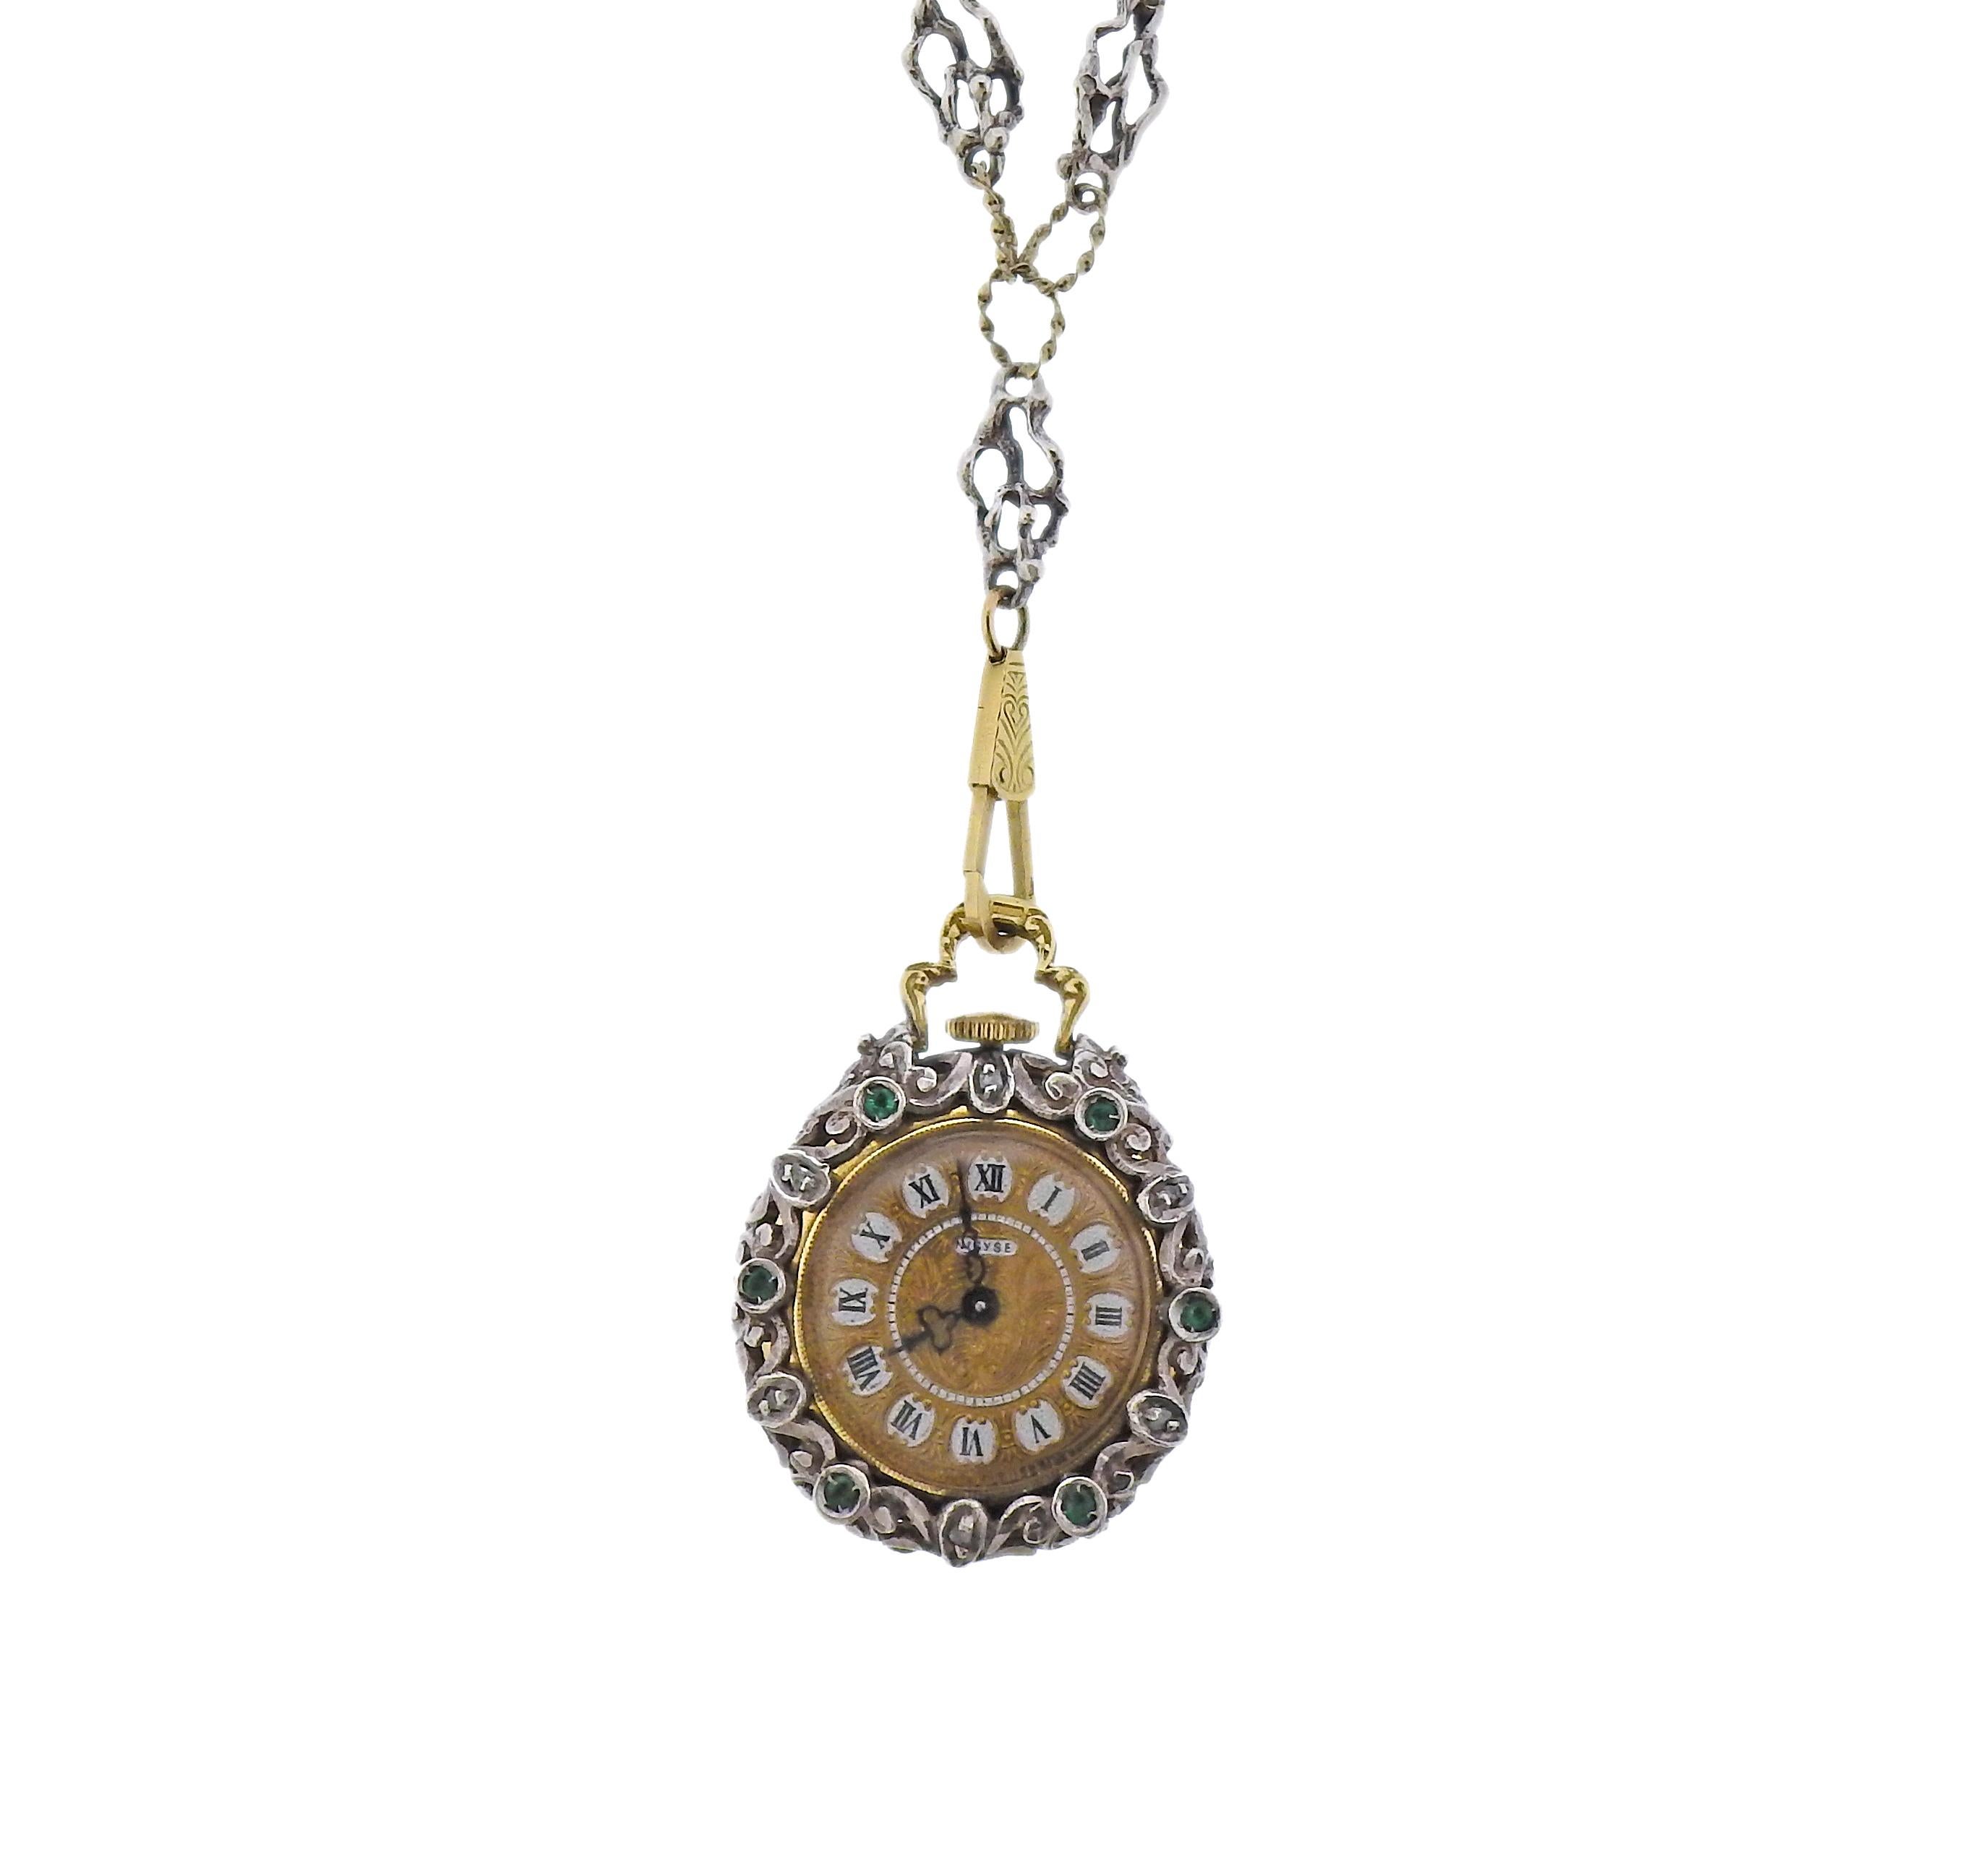 Antike Silber- und 14-karätige Goldkette mit Käfiganhänger, in dem eine Taschenuhr steckt. Verziert mit Diamanten im Rosenschliff, Emaille und  grüne Edelsteine. Der Durchmesser des Anhängers beträgt 29 mm. Die Kette ist 28